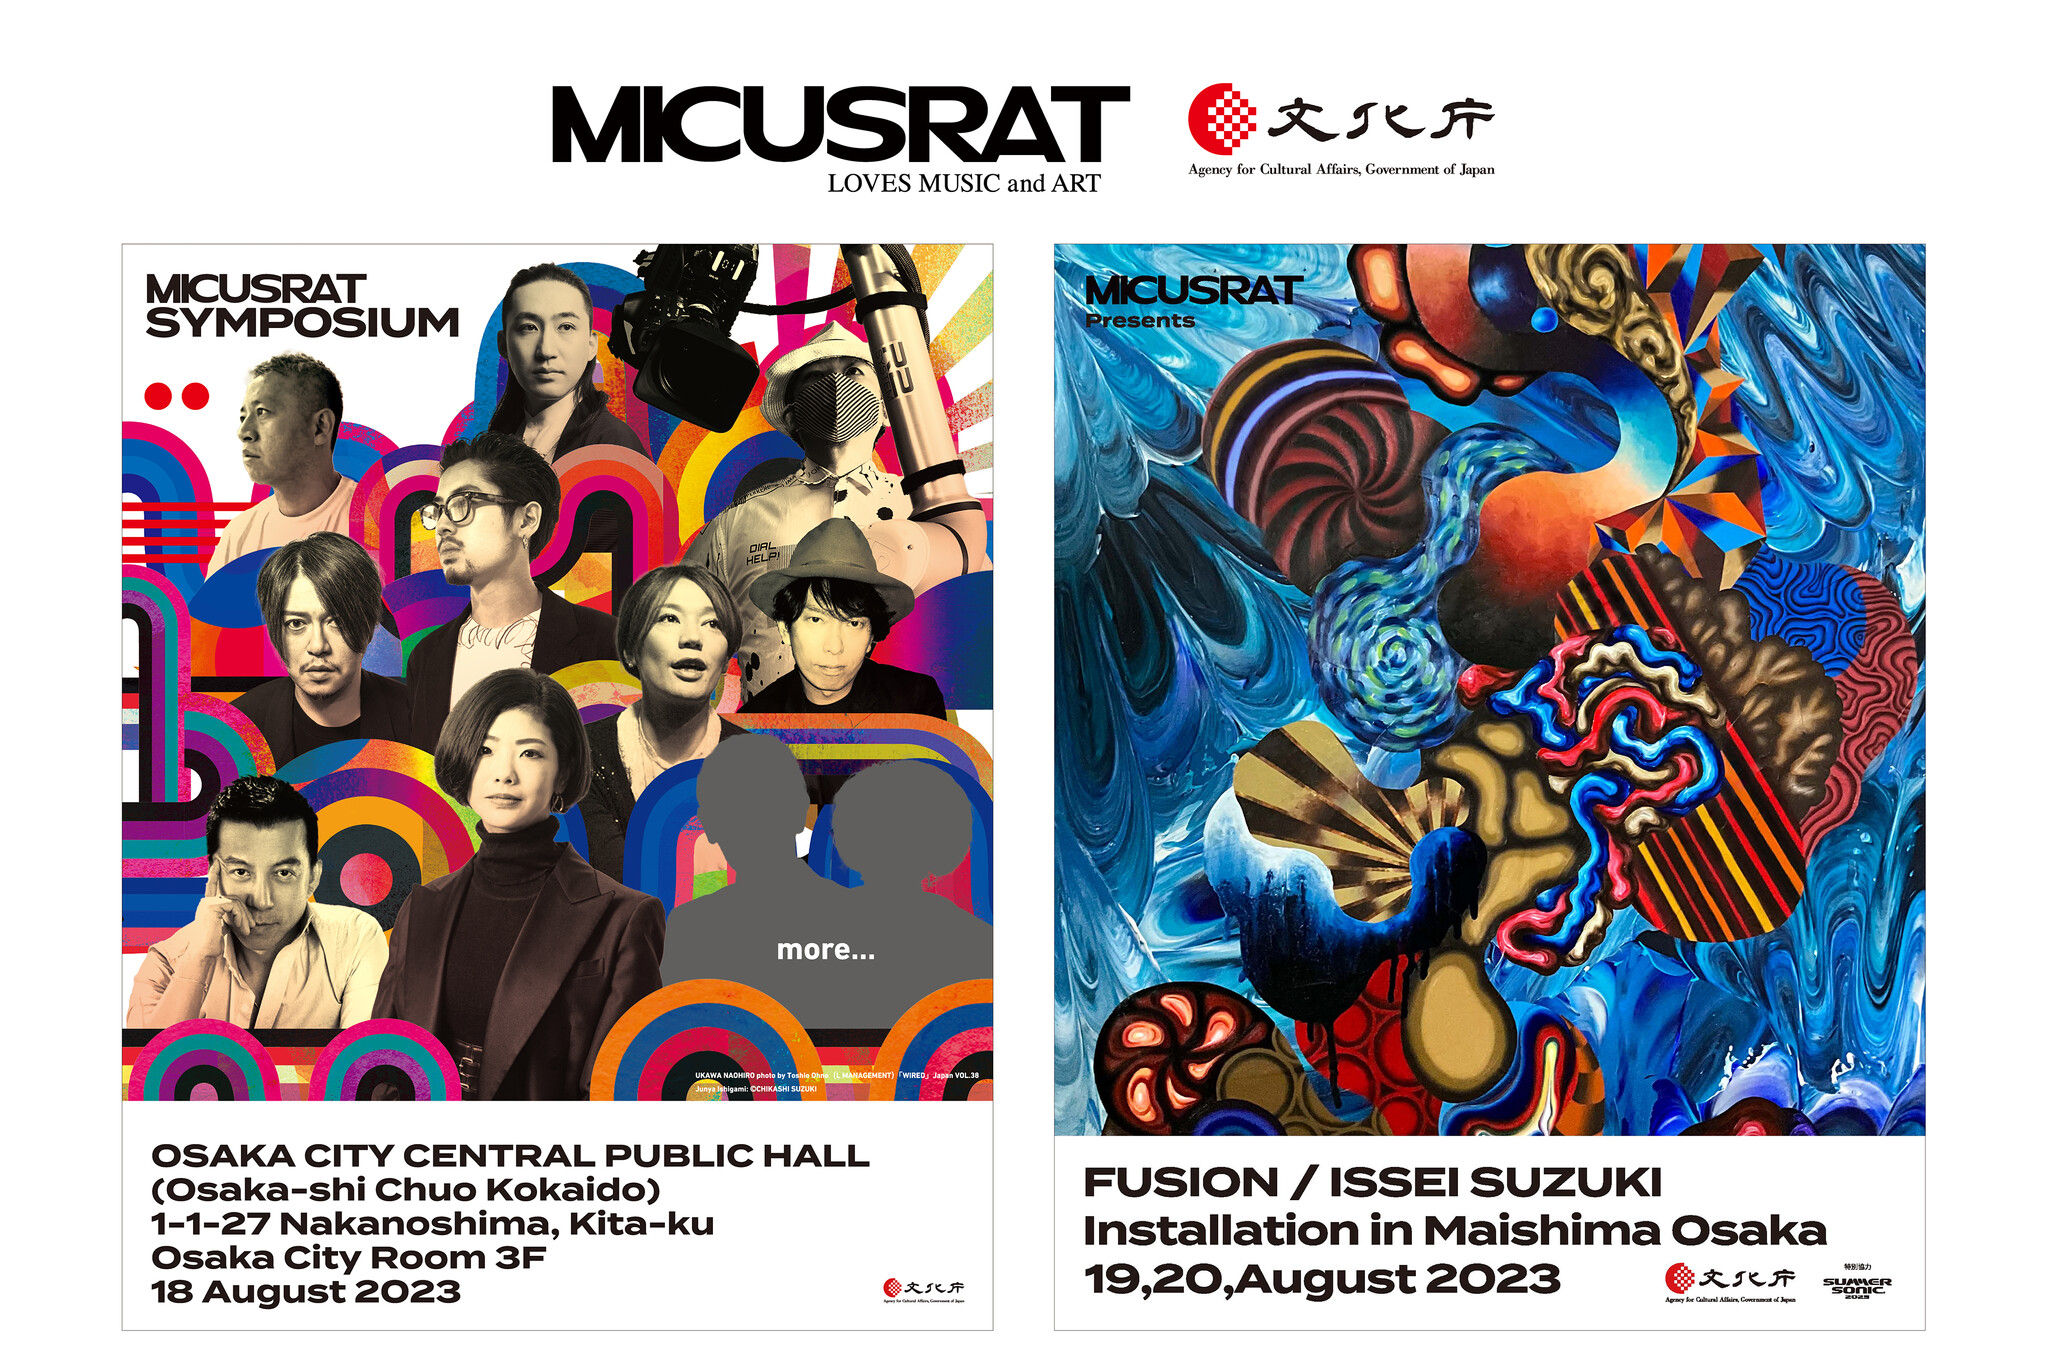 音楽とアートの融合による新プロジェクト「MICUSRAT -Loves